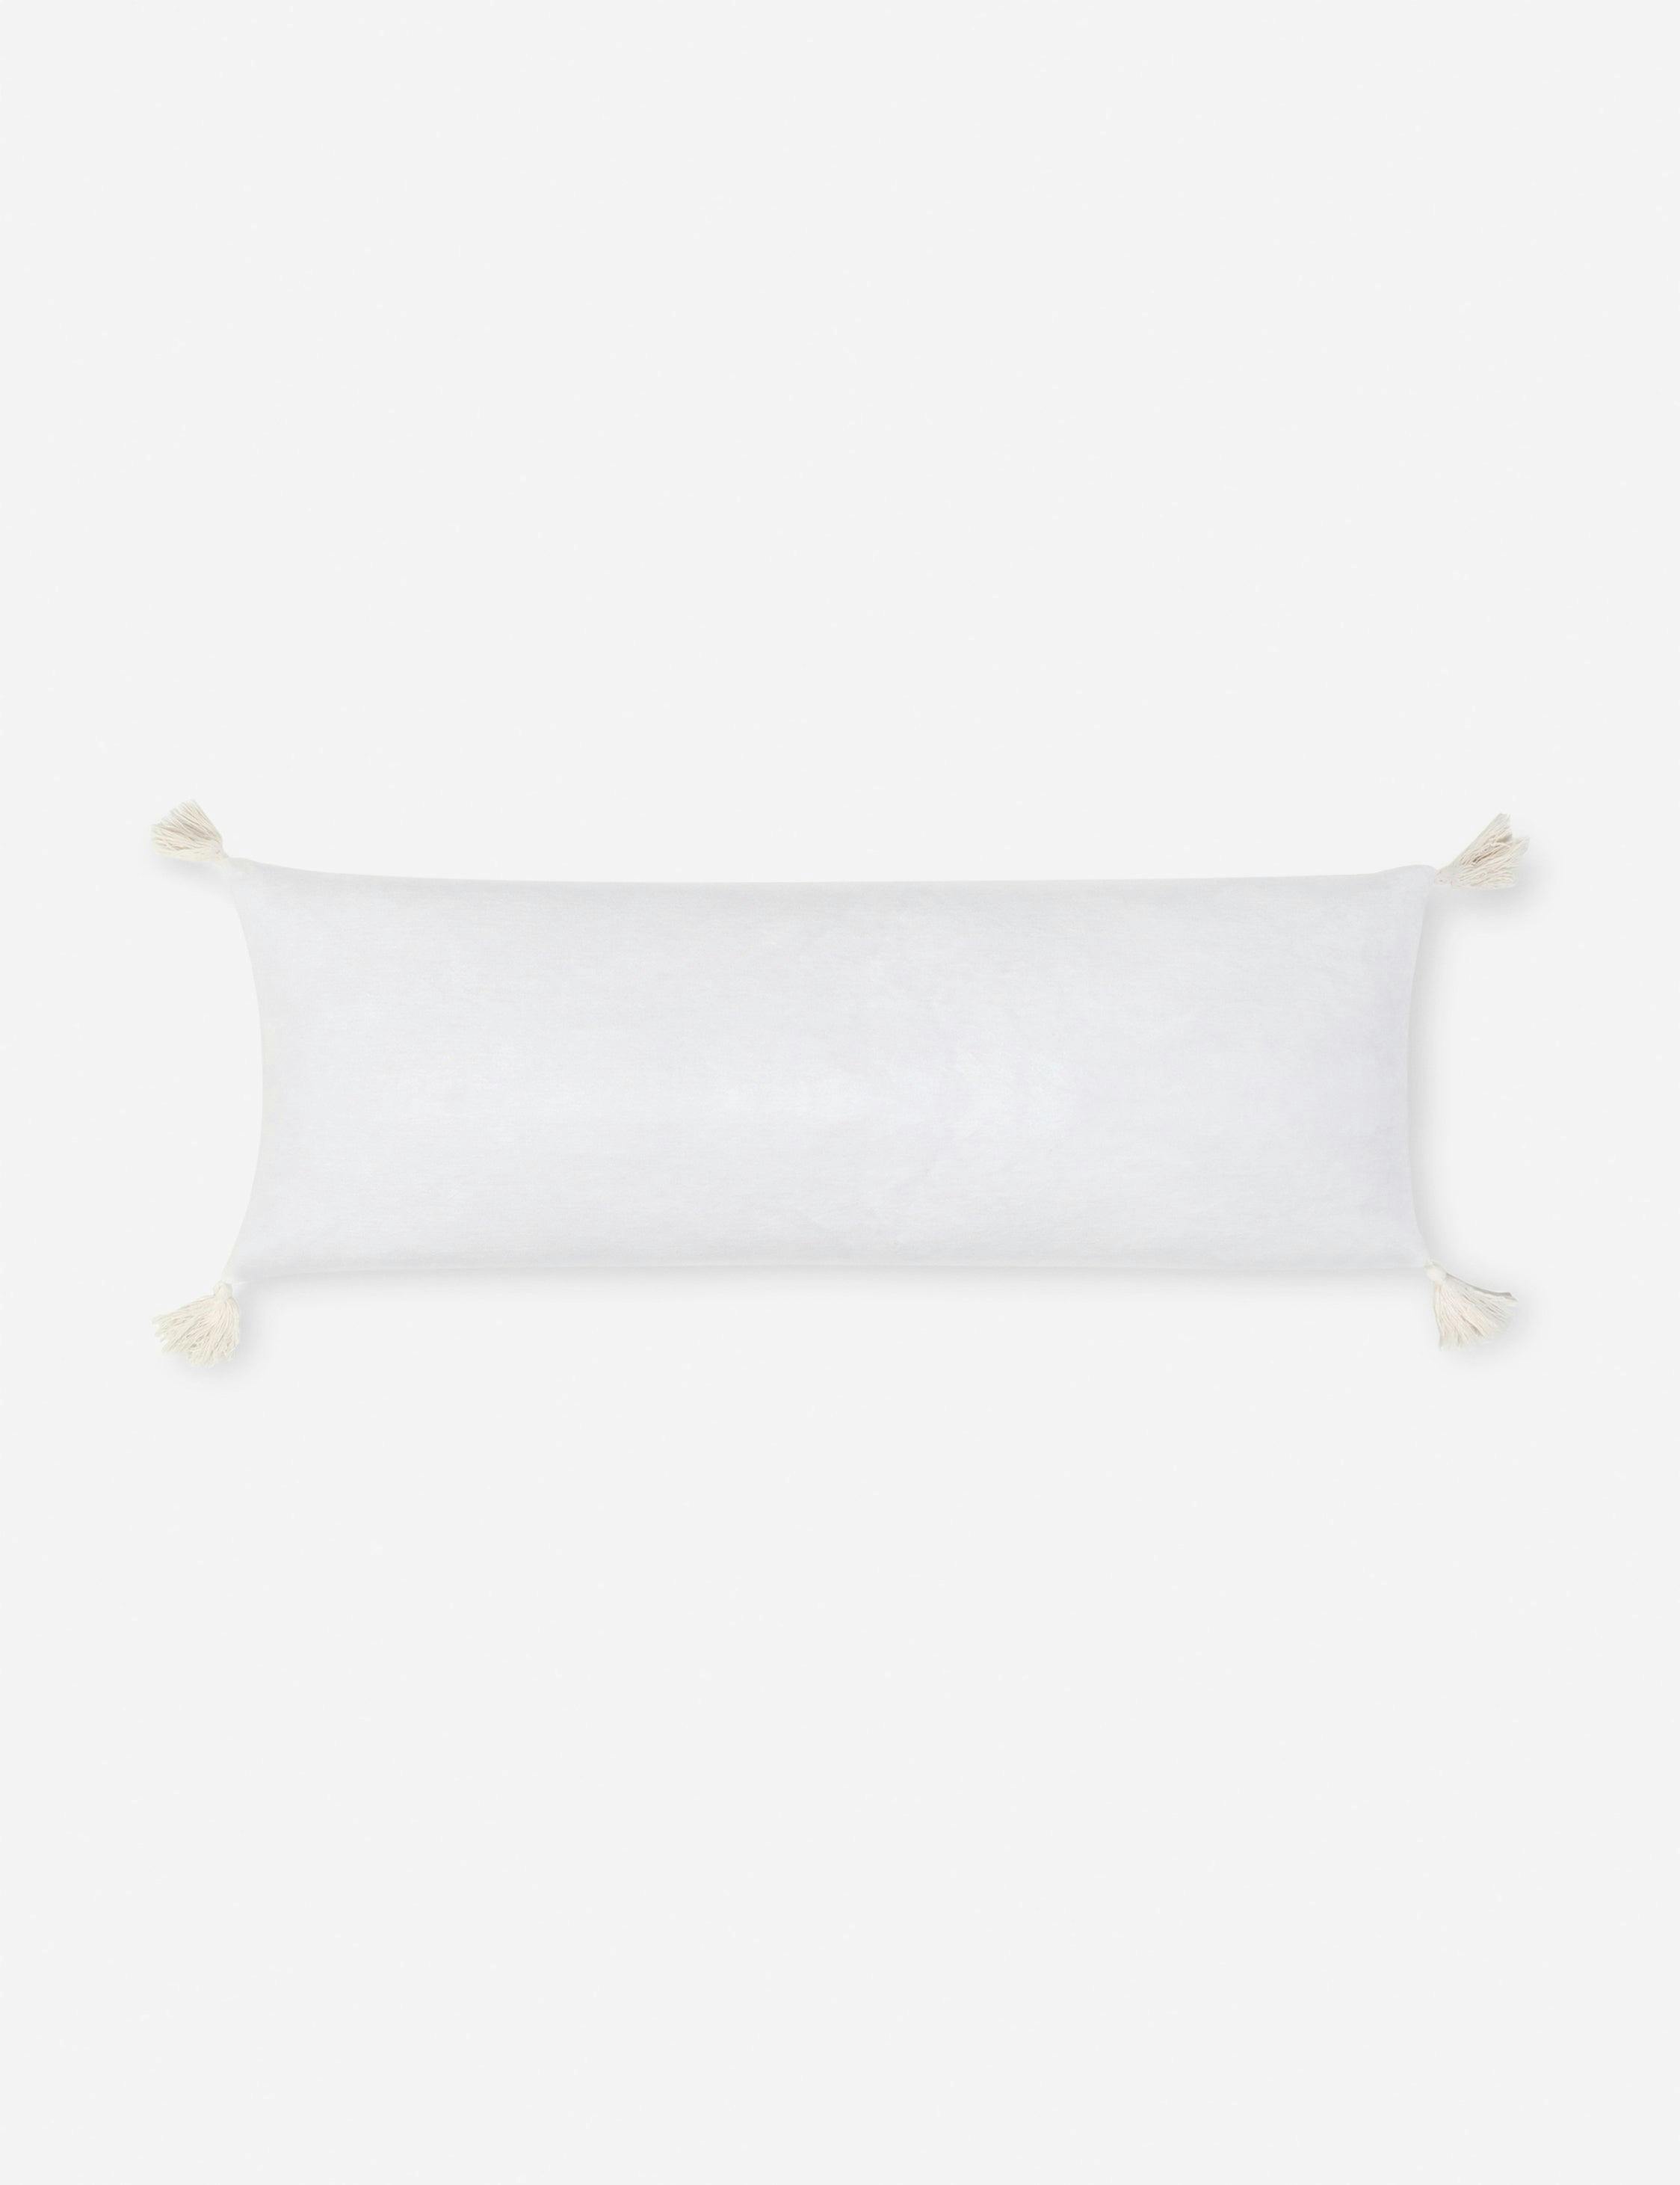 Bianca Velvet Pillow by Pom Pom at Home - White / Lumbar